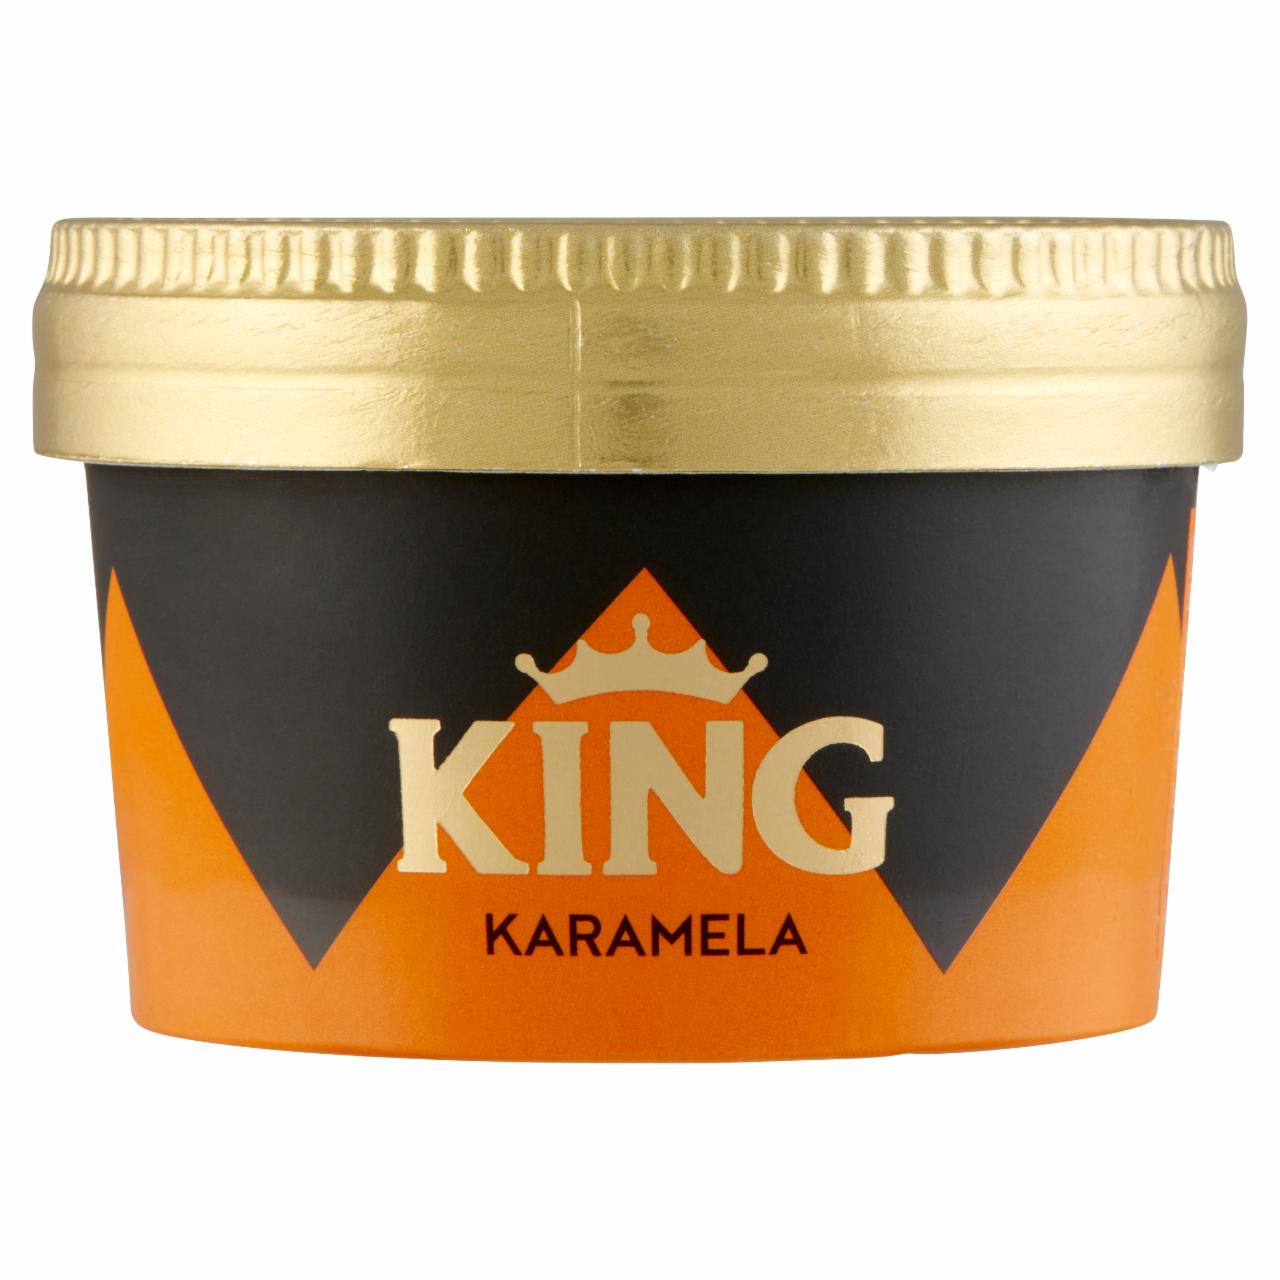 Képek - King karamell ízű jégkrém karamell ízű öntettel és kekszdarabkákkal 120 ml